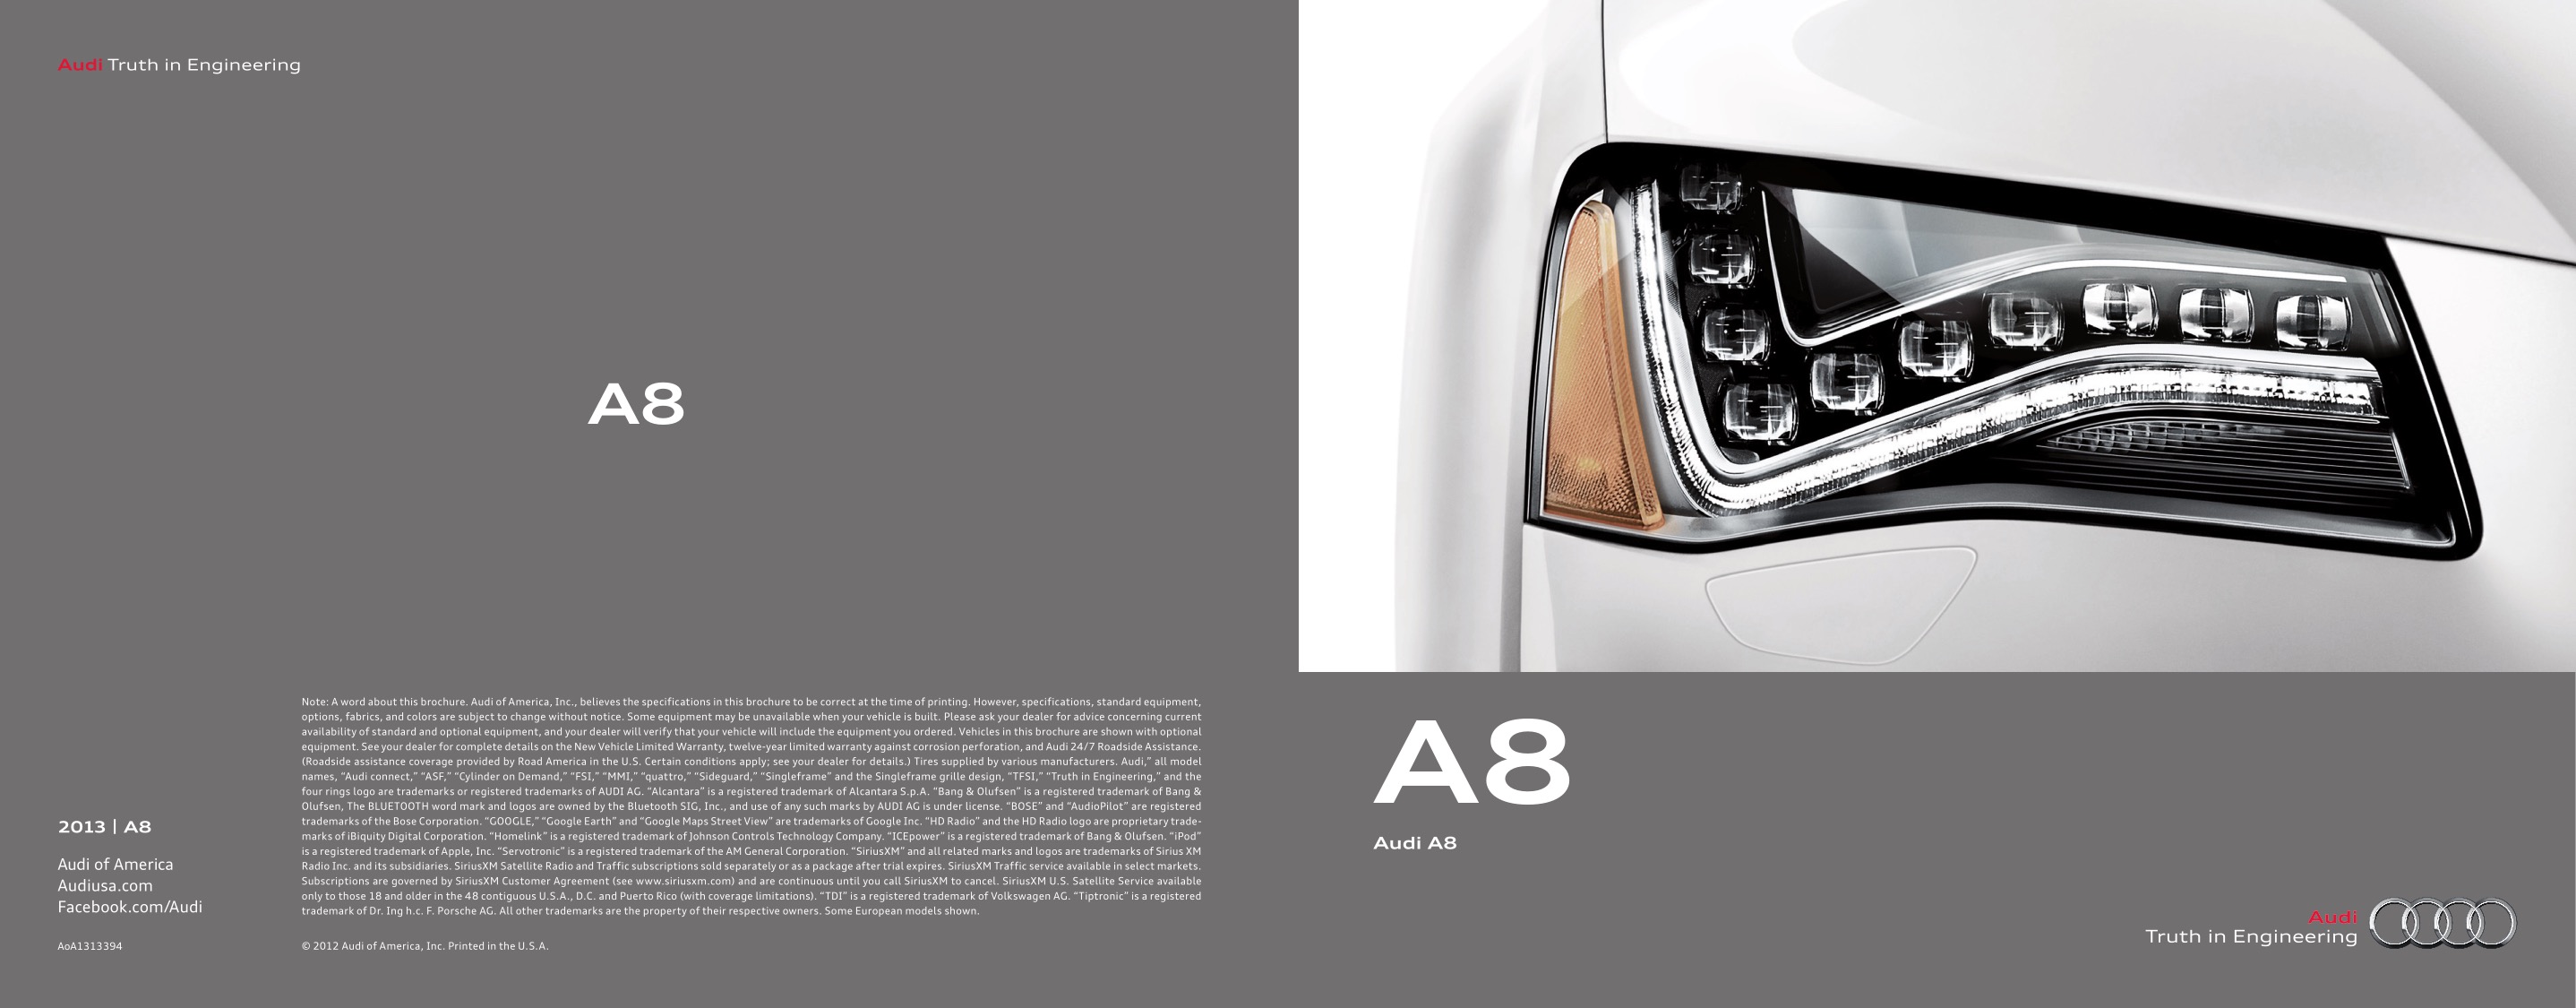 2013 Audi A8 Brochure